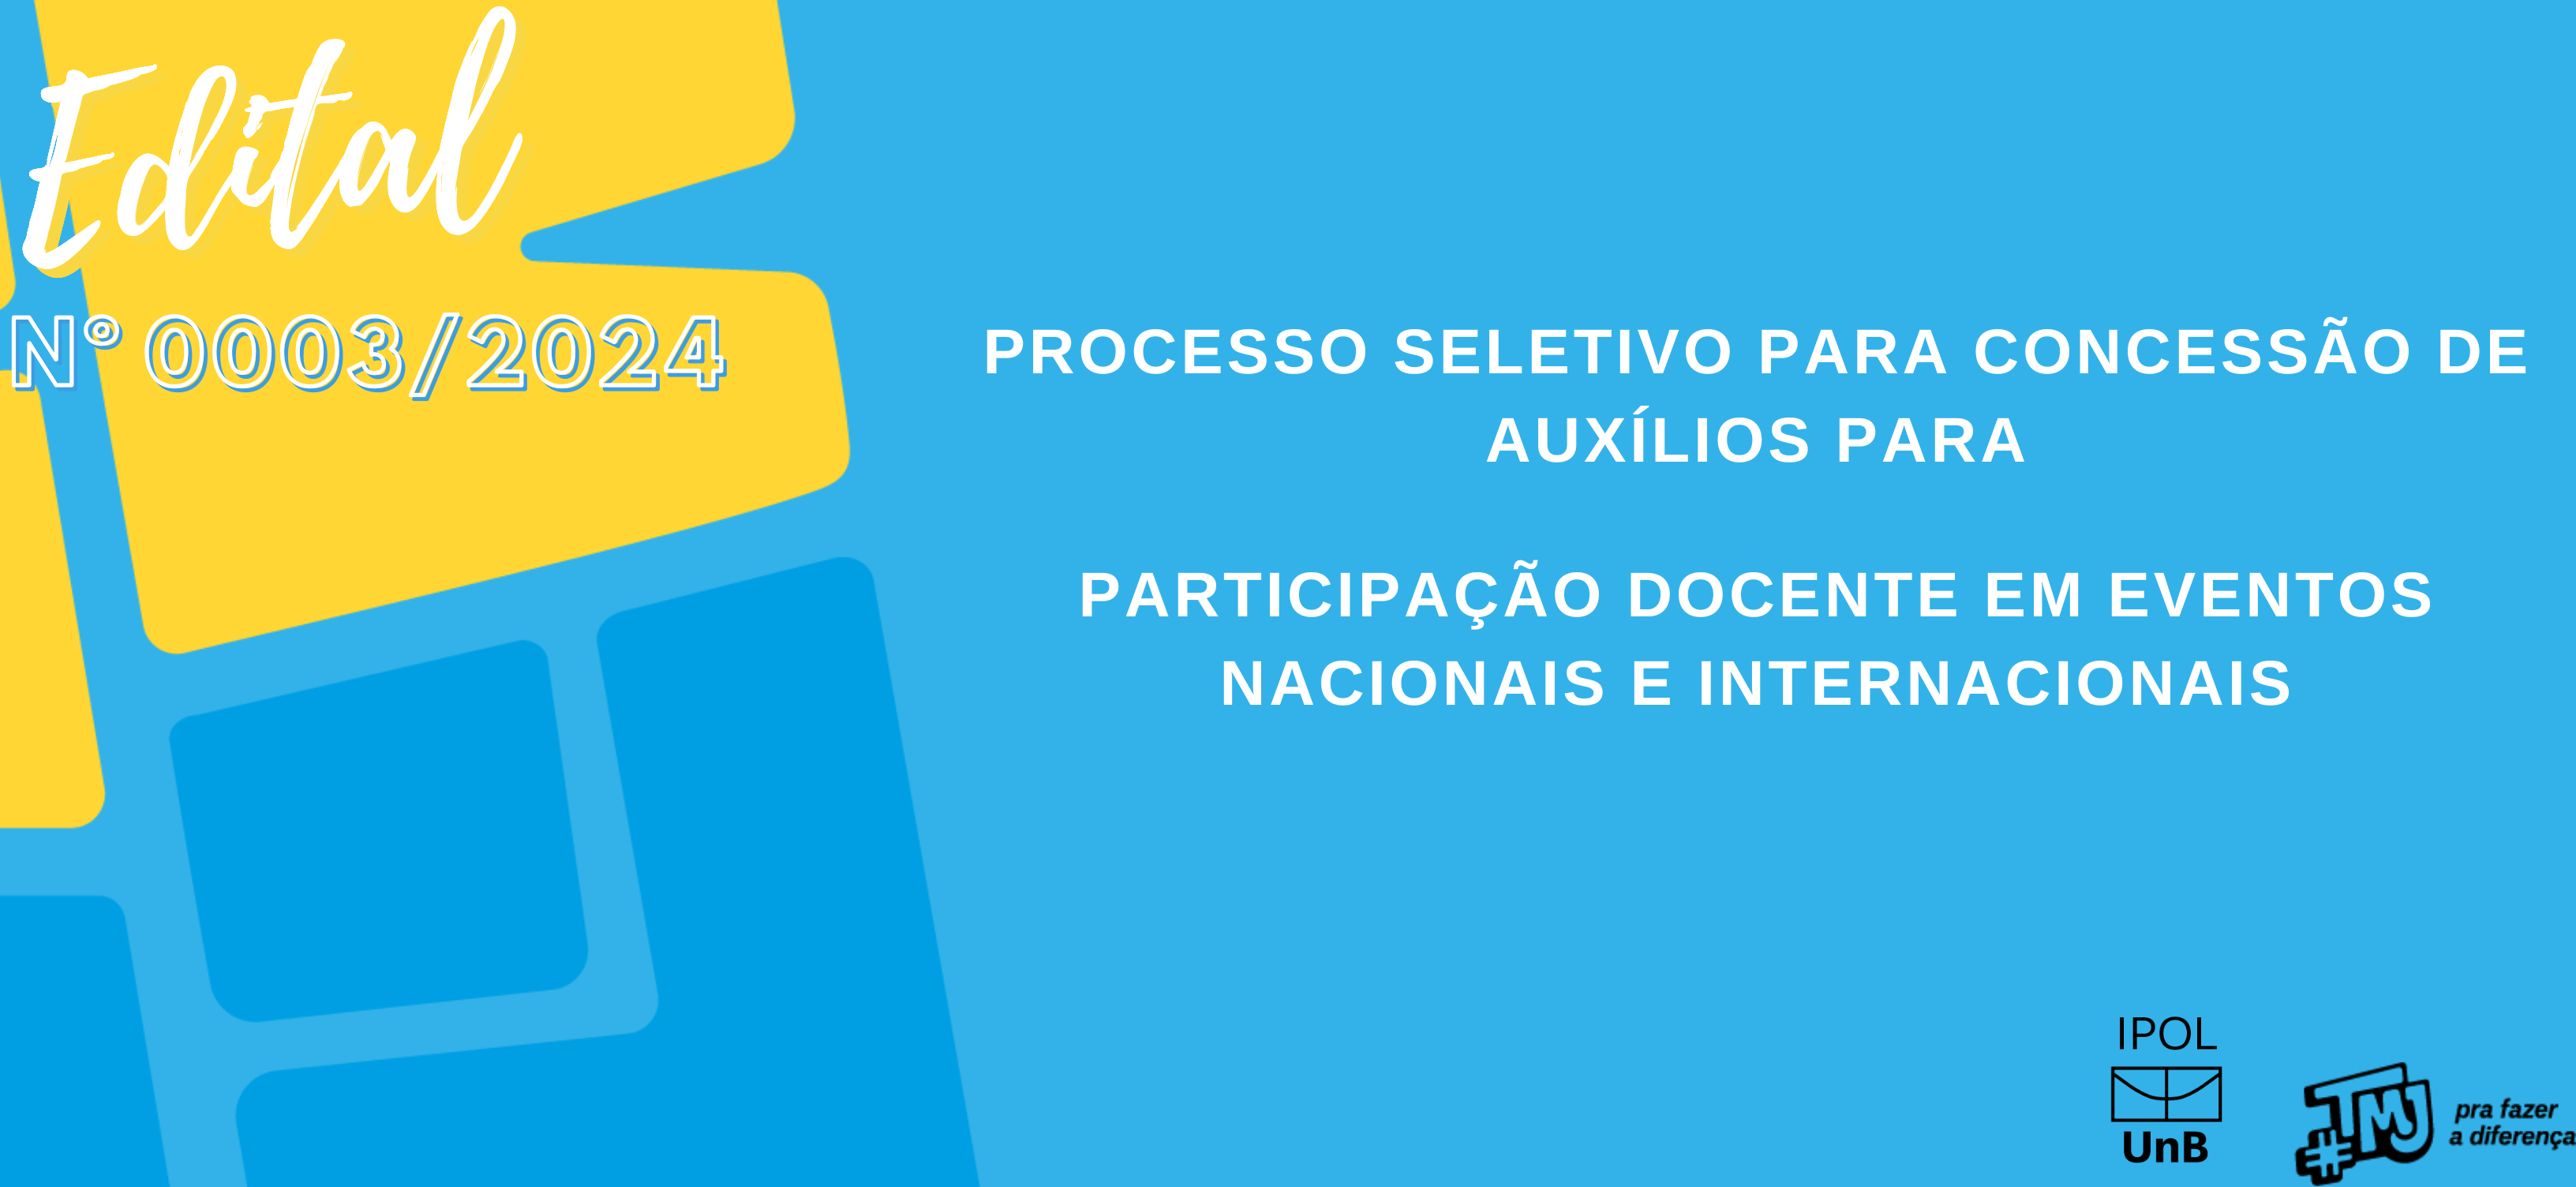 Atualizações do Processo Seletivo para Concessão de Auxílios para Participação Docente em Eventos Nacionais e Internacionais